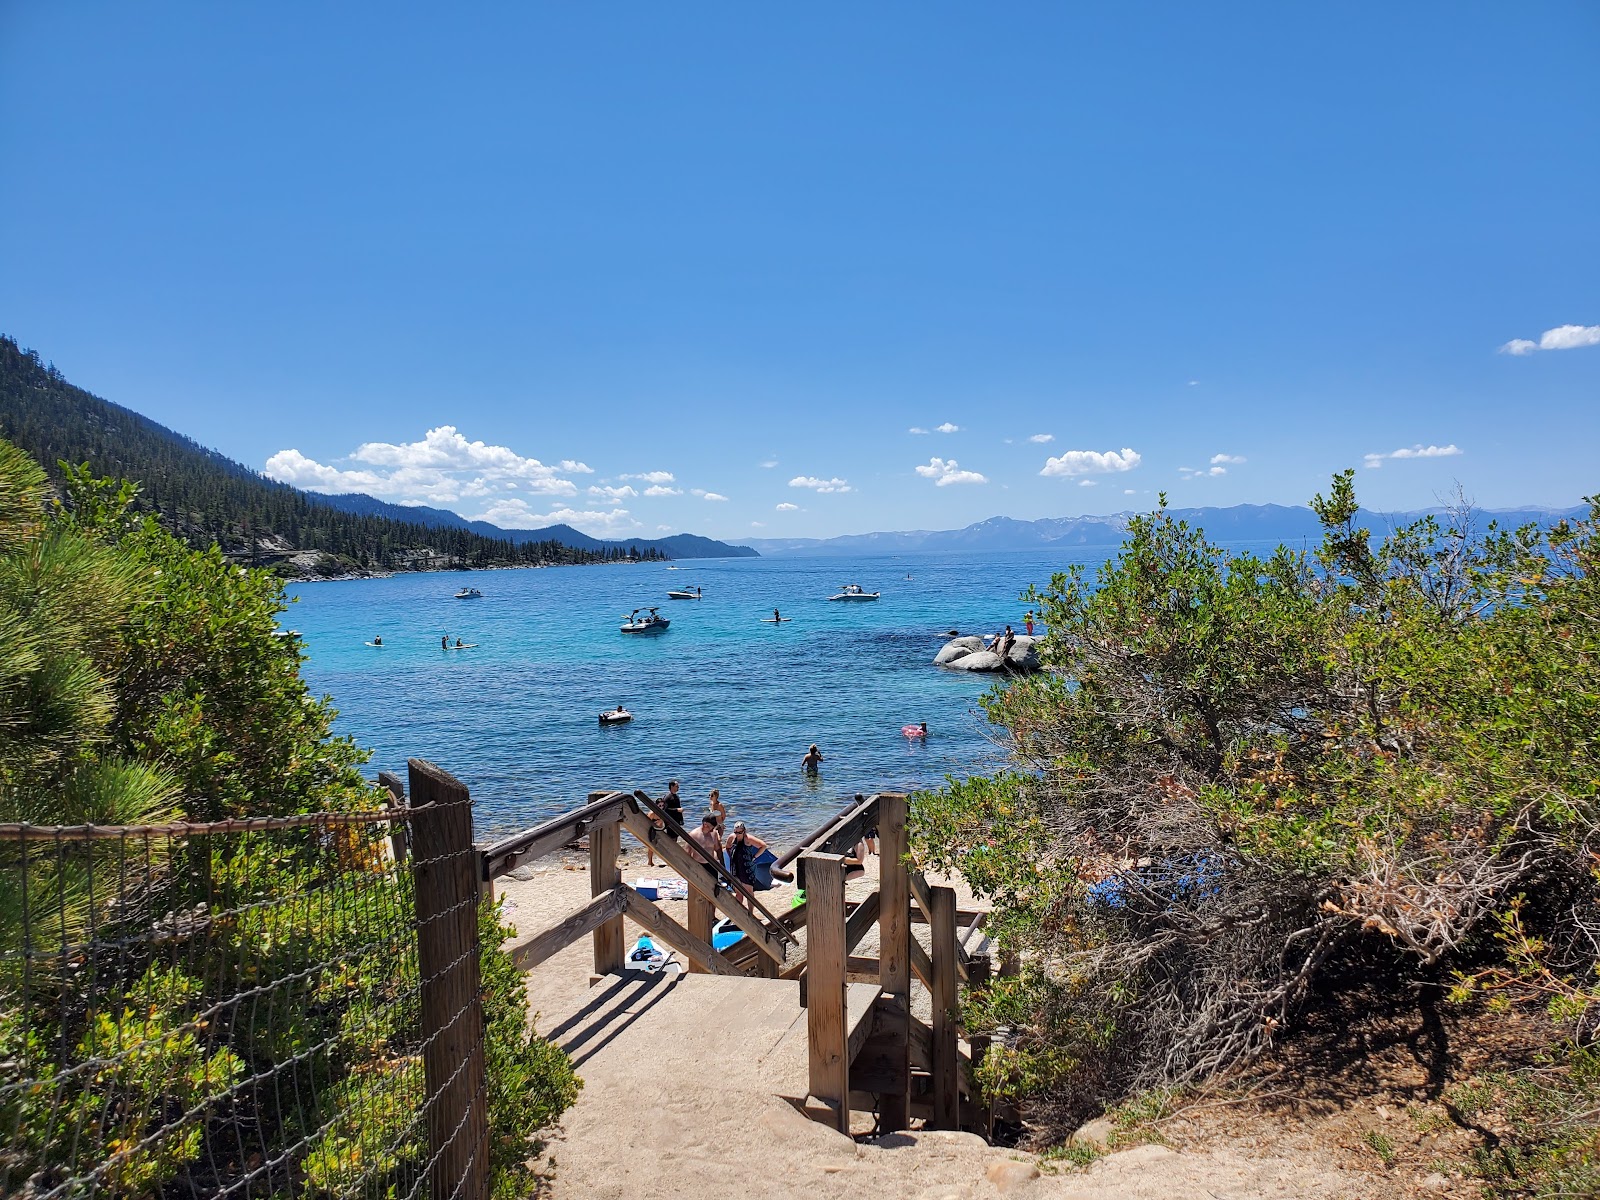 Fotografie cu Hidden Beach Plaza - locul popular printre cunoscătorii de relaxare